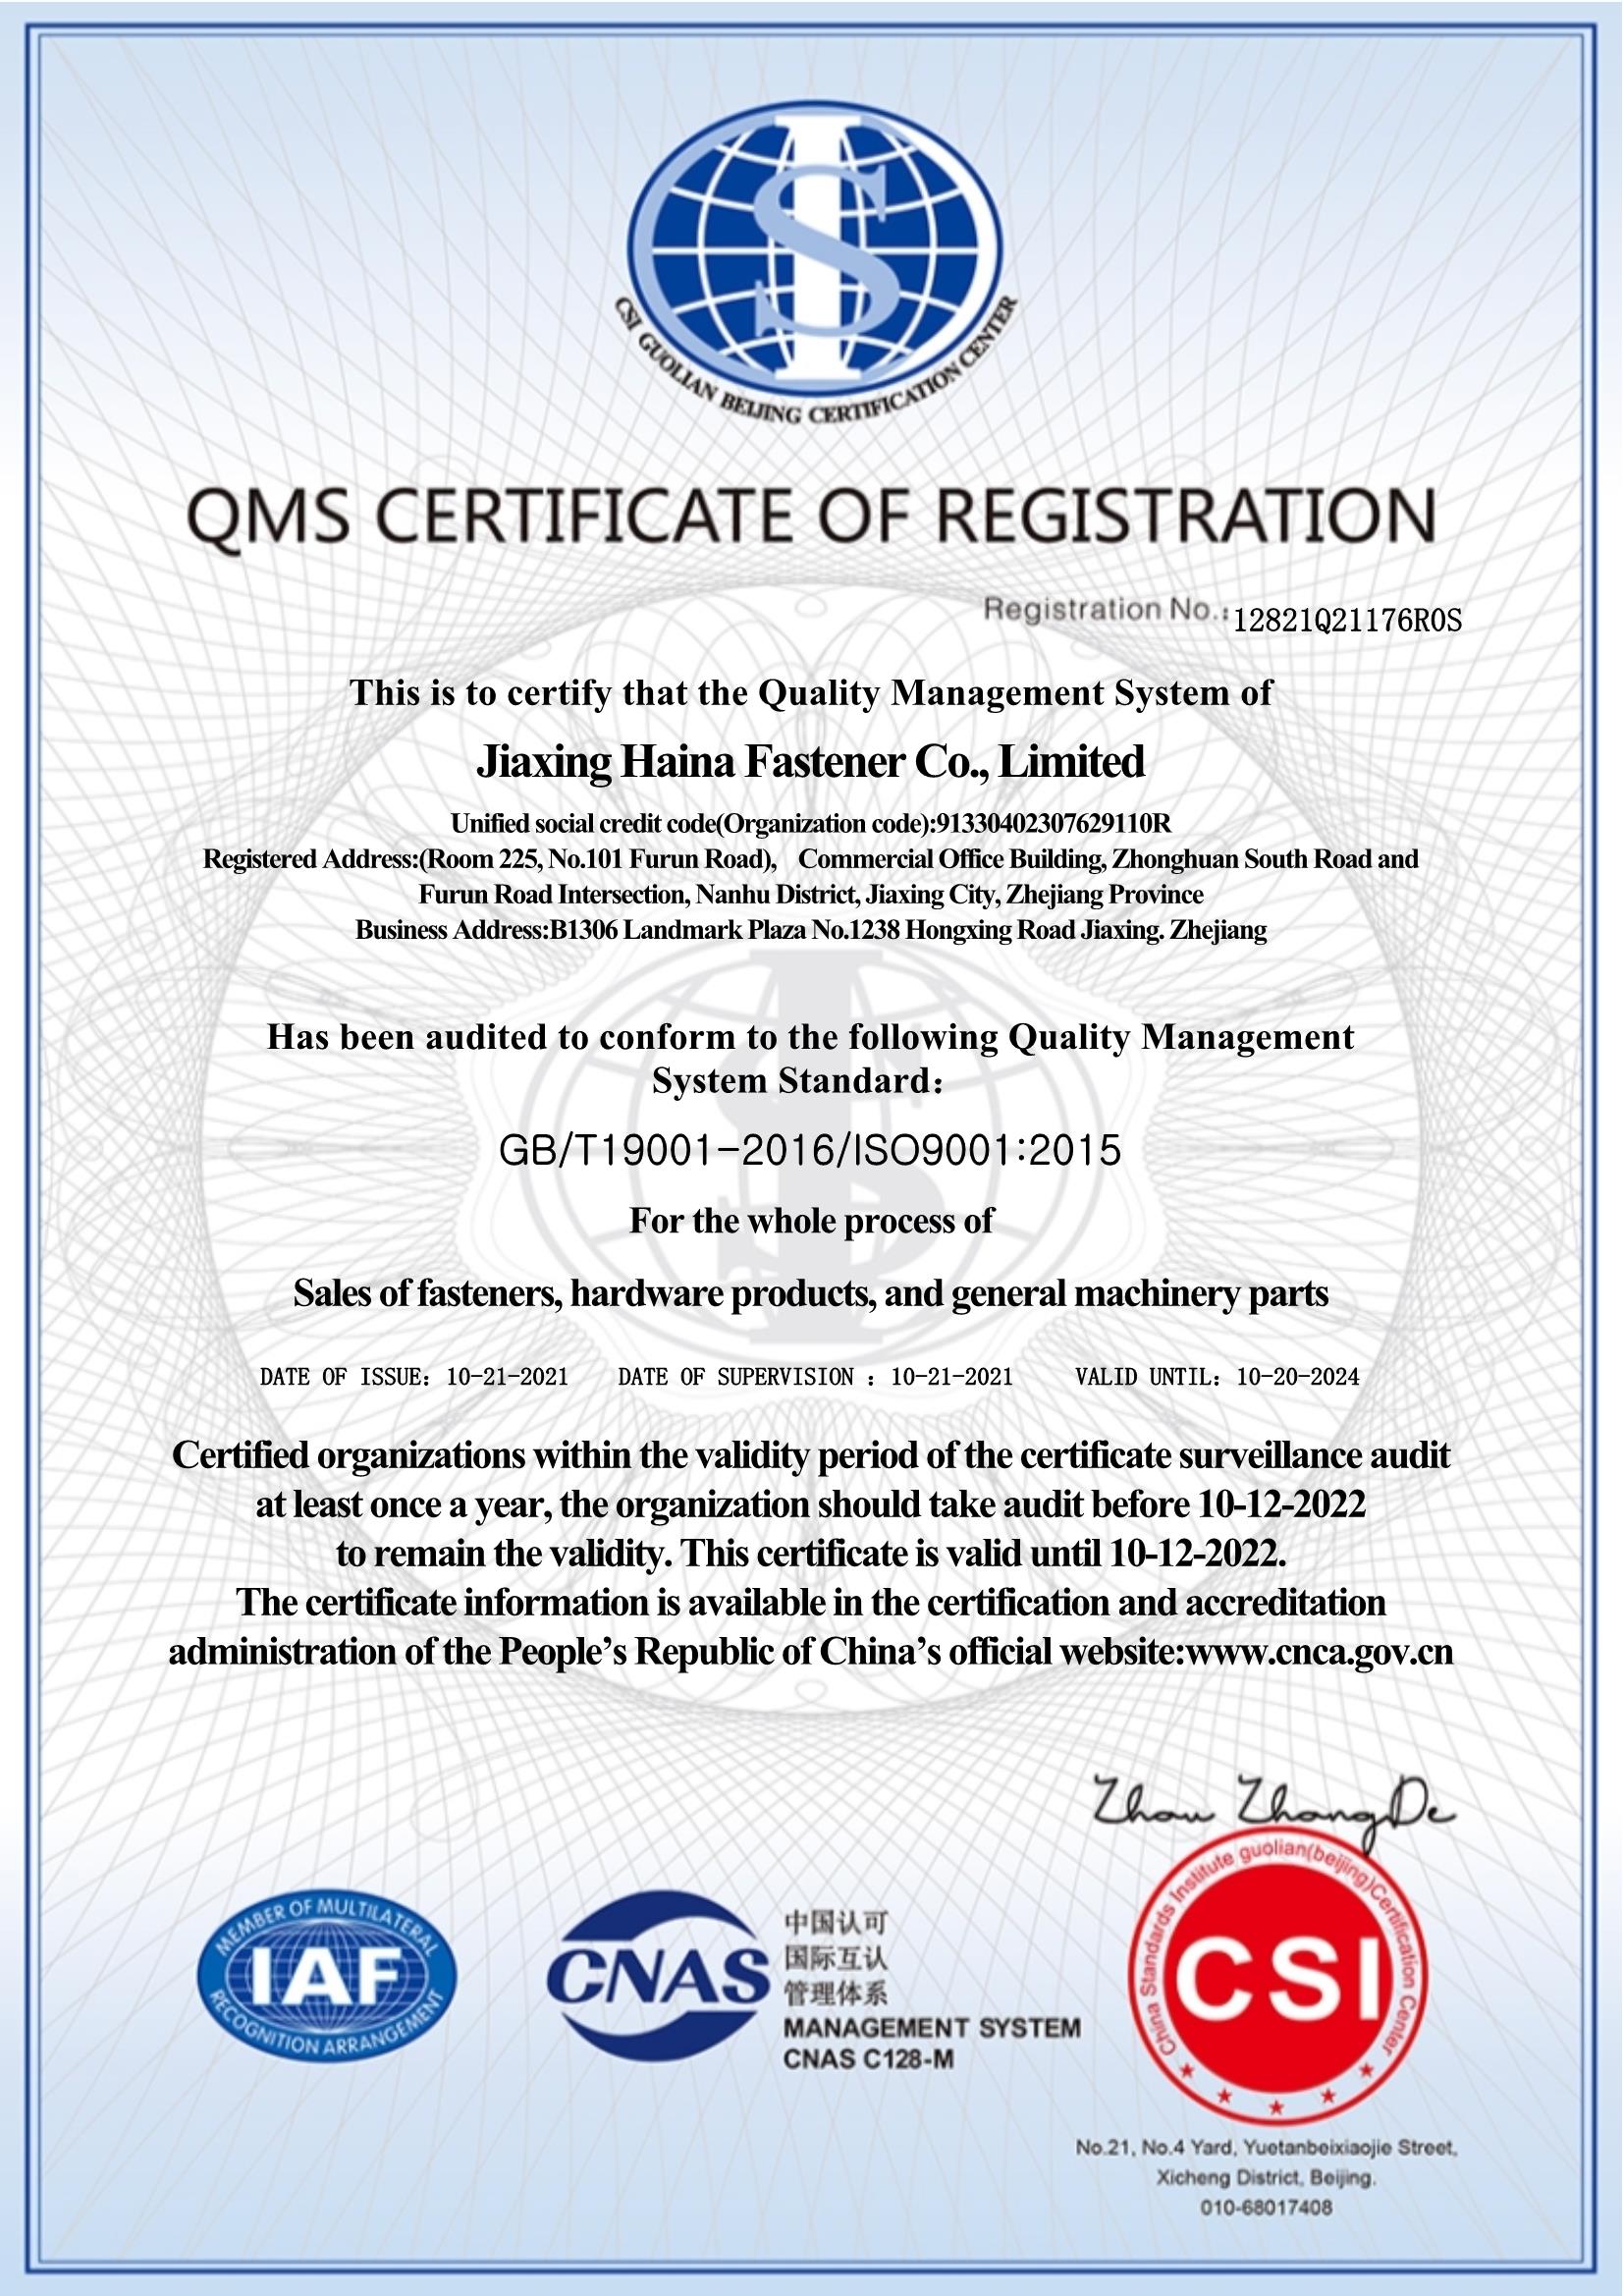 HAINA ISO9001:2015